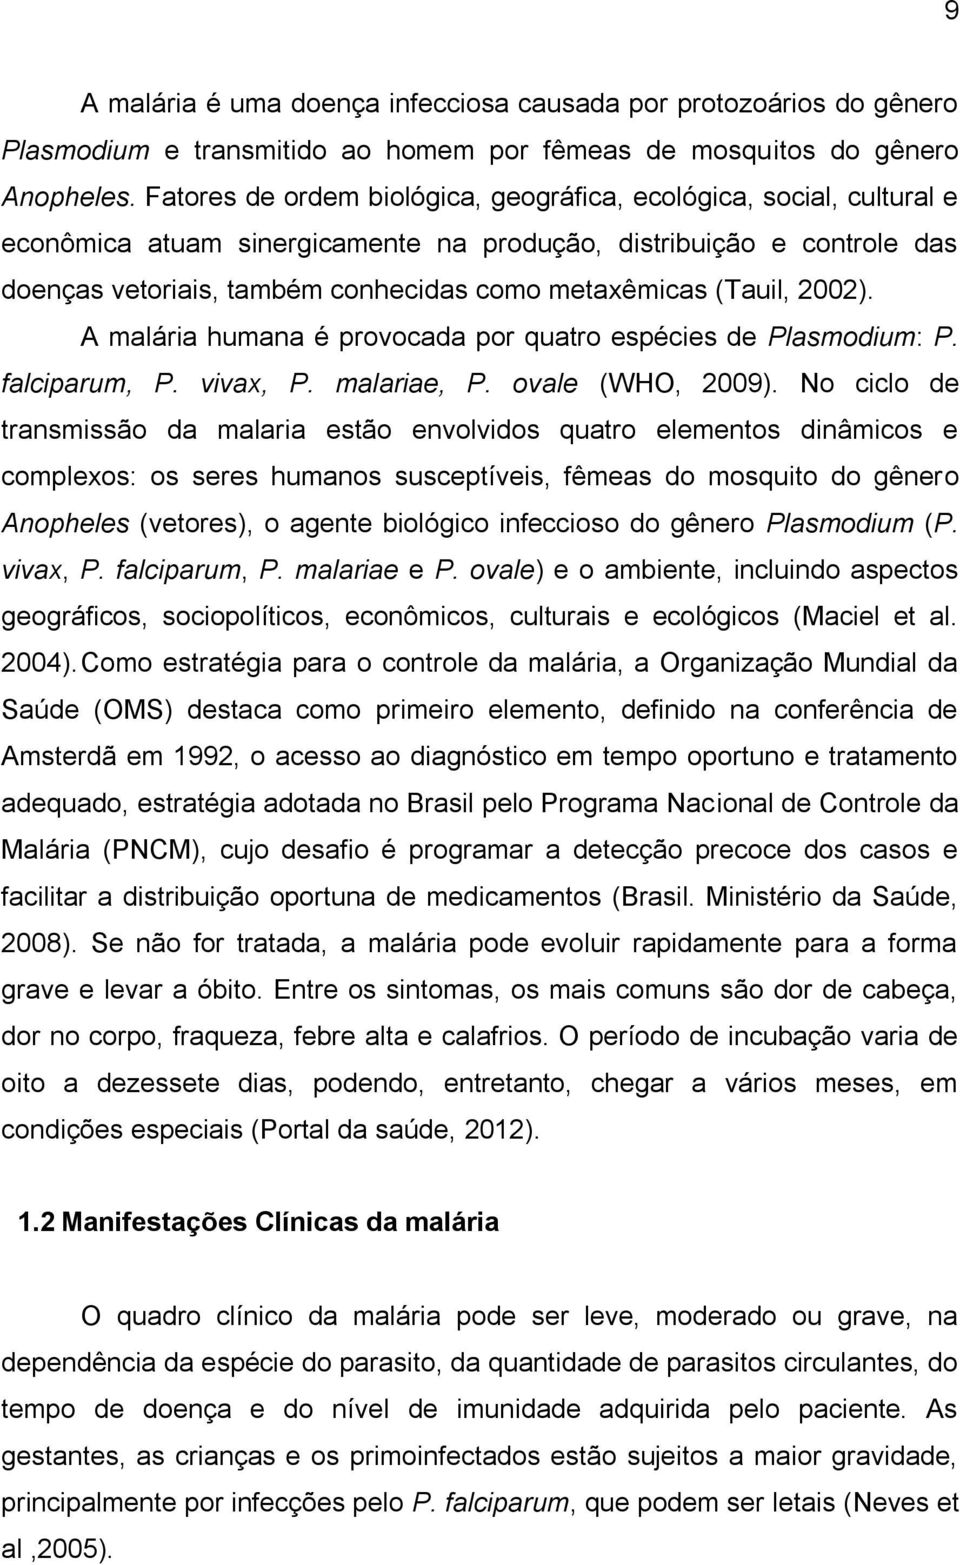 (Tauil, 2002). A malária humana é provocada por quatro espécies de Plasmodium: P. falciparum, P. vivax, P. malariae, P. ovale (WHO, 2009).